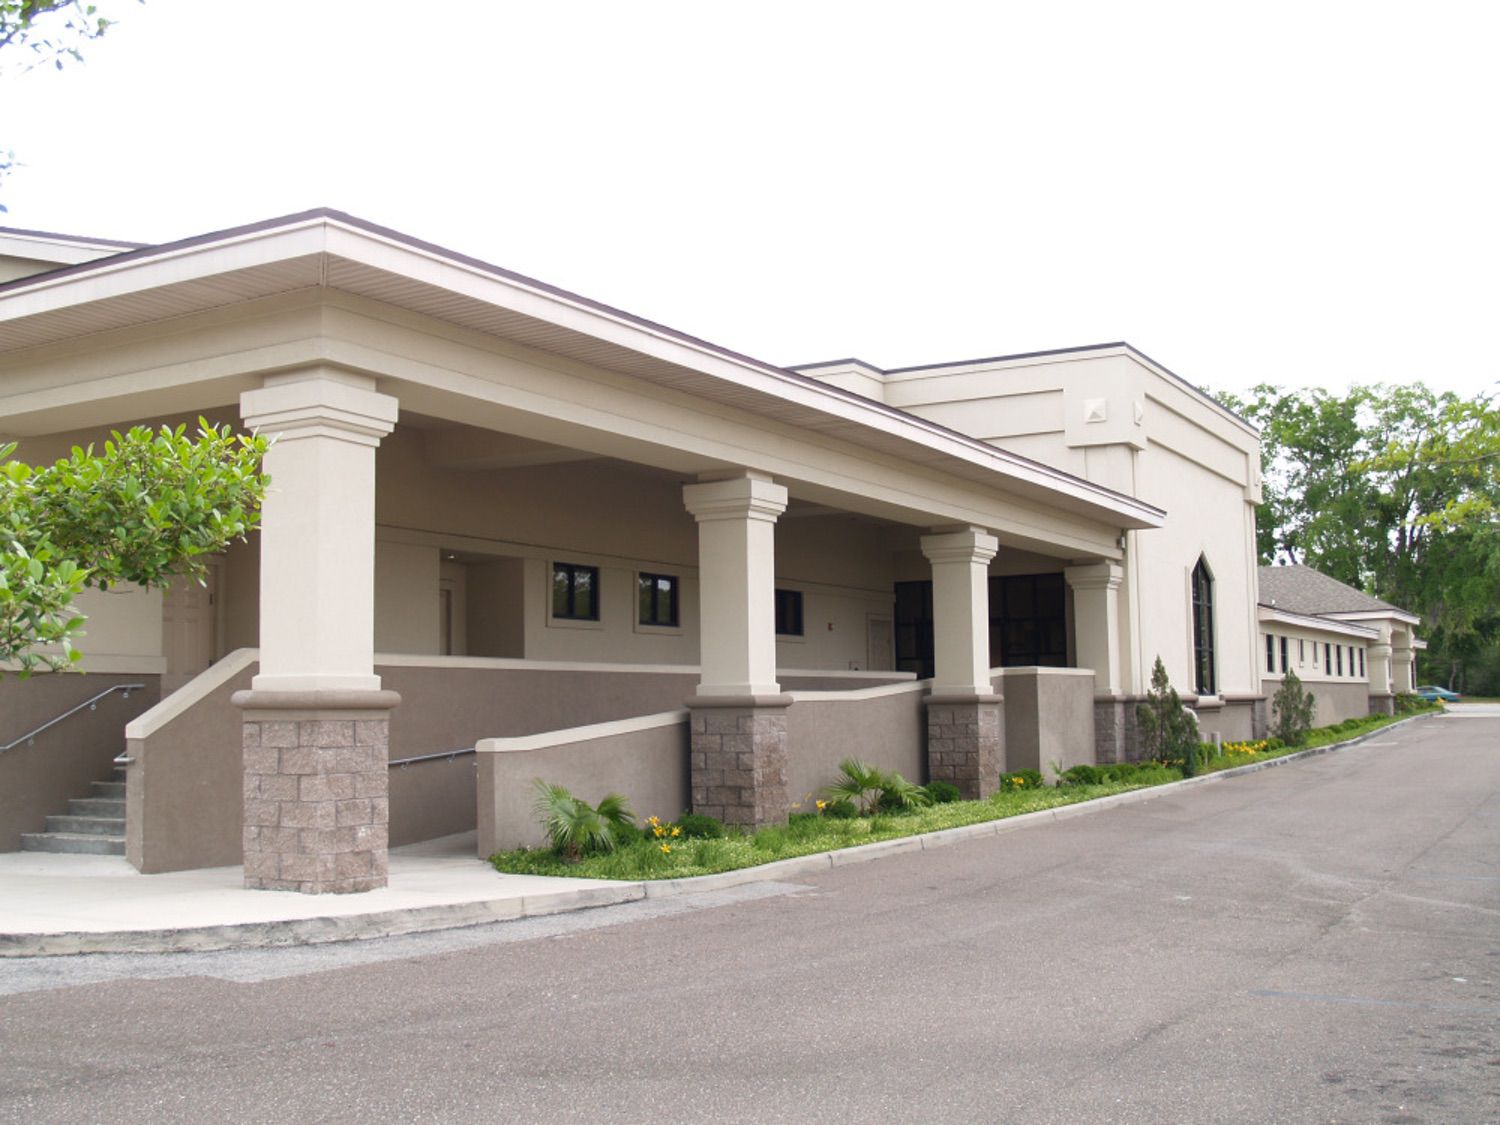 Clay Surgery Center